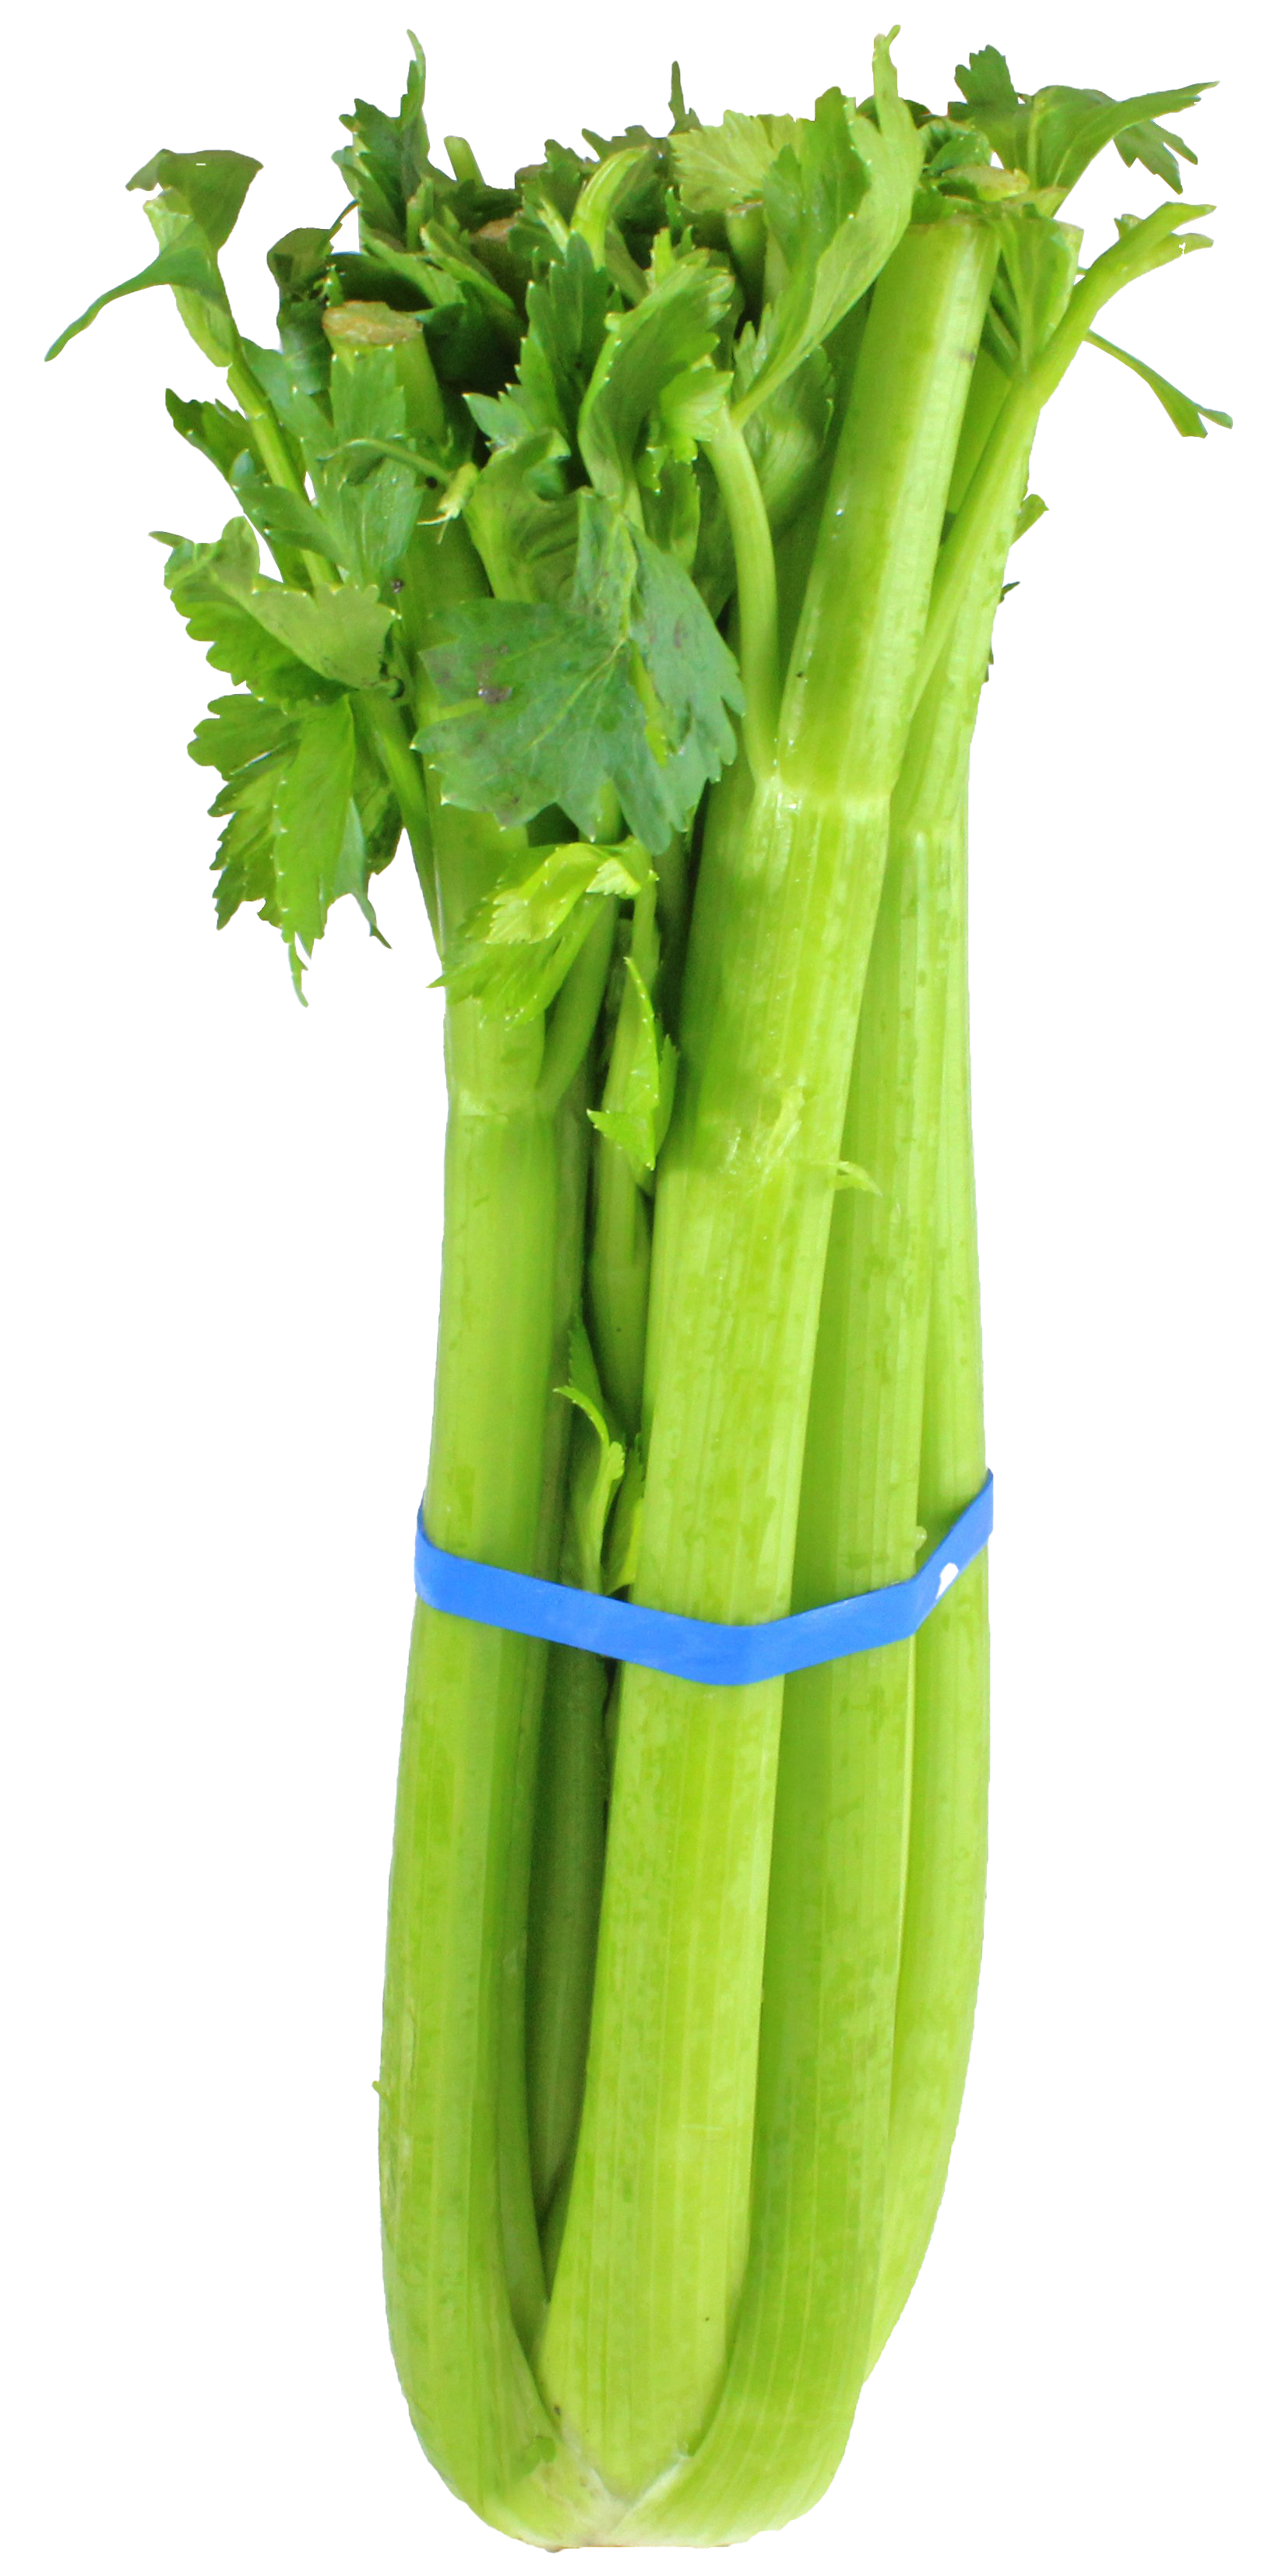 Vegetable Celery PNG Image Background